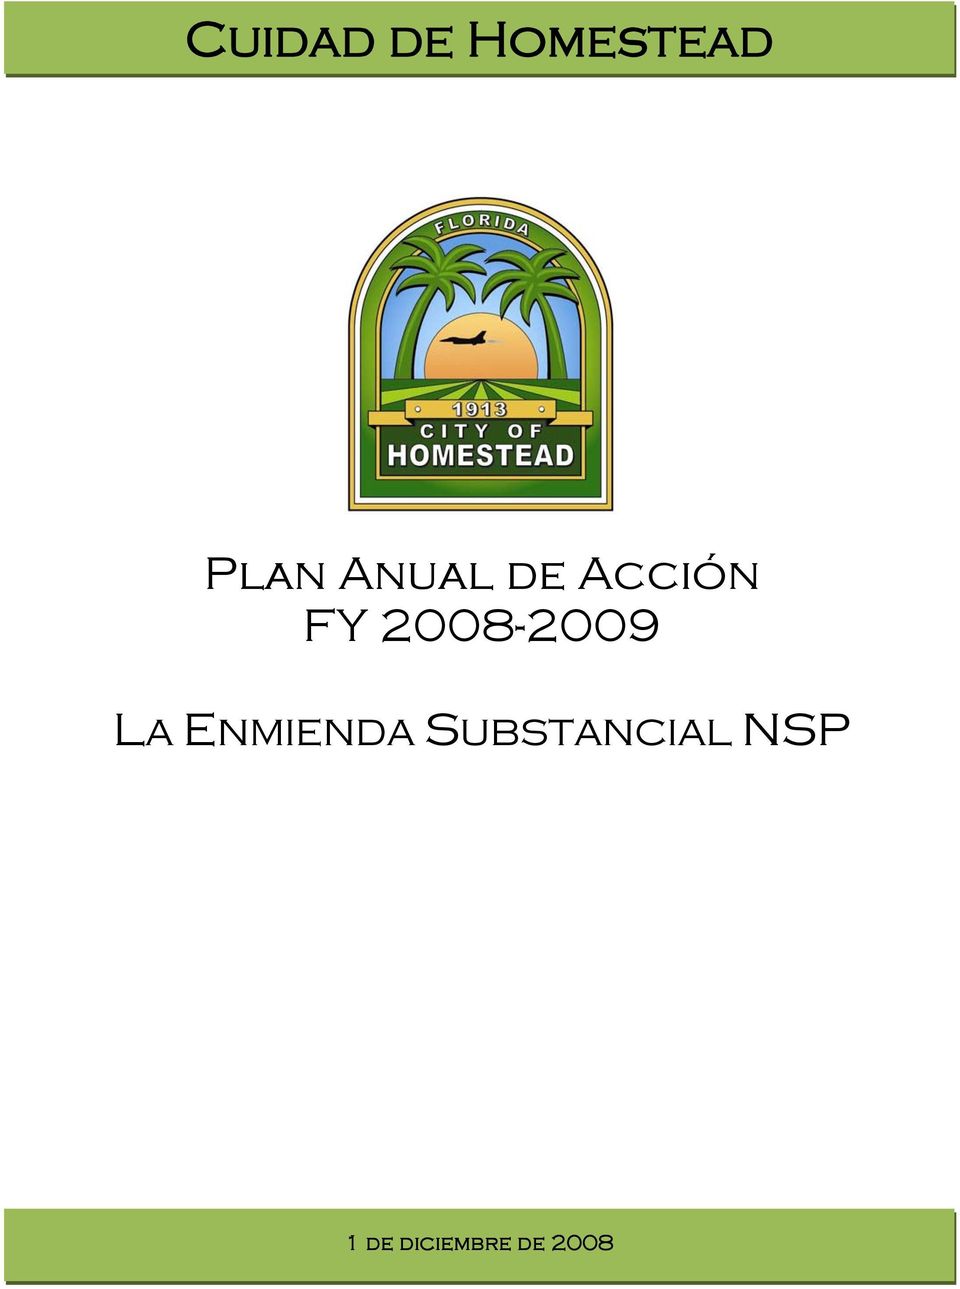 2008-2009 LA ENMIENDA